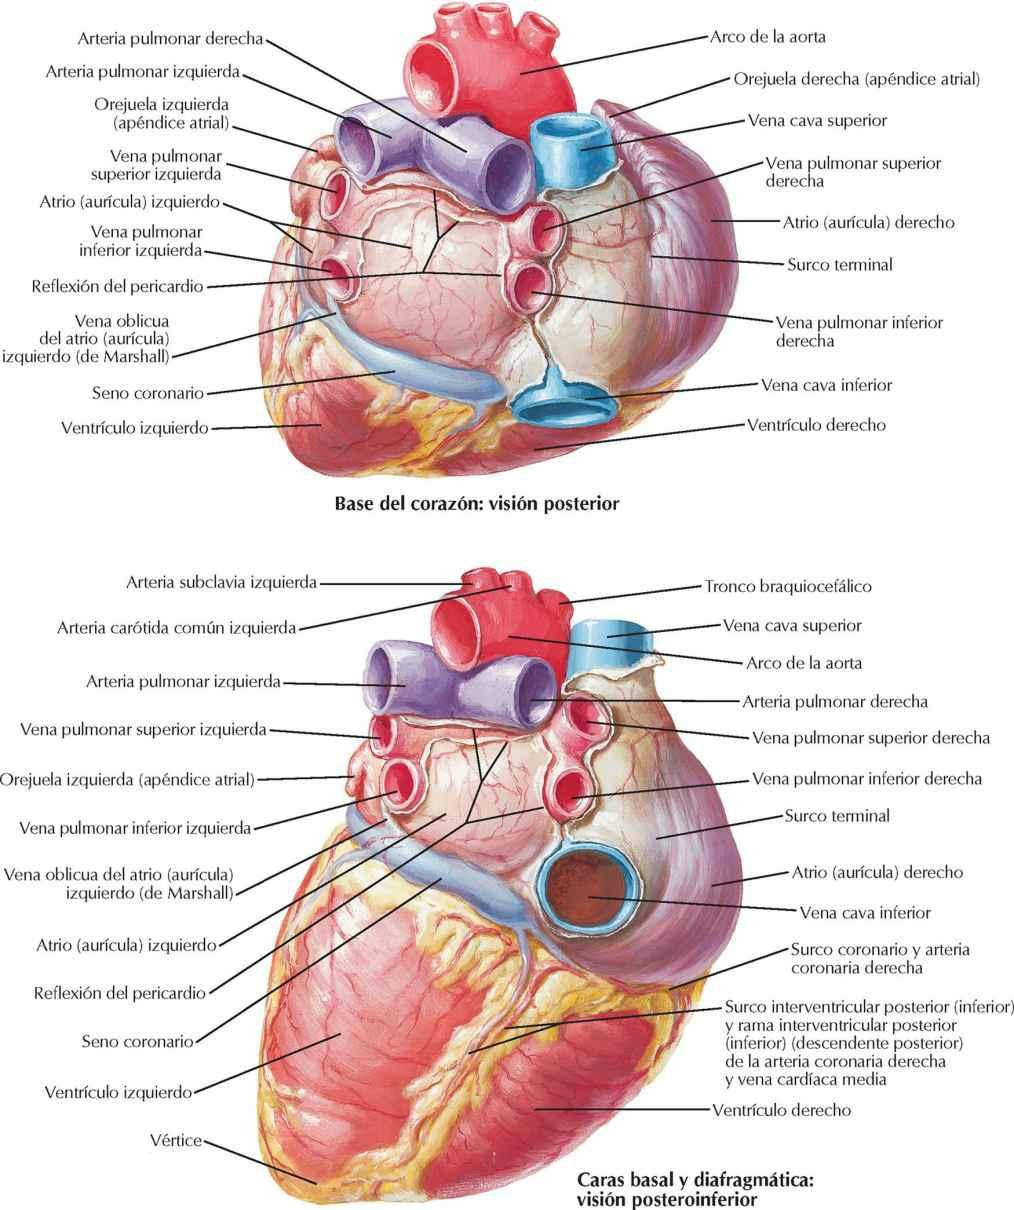 Corazón: caras basal y diafragmática